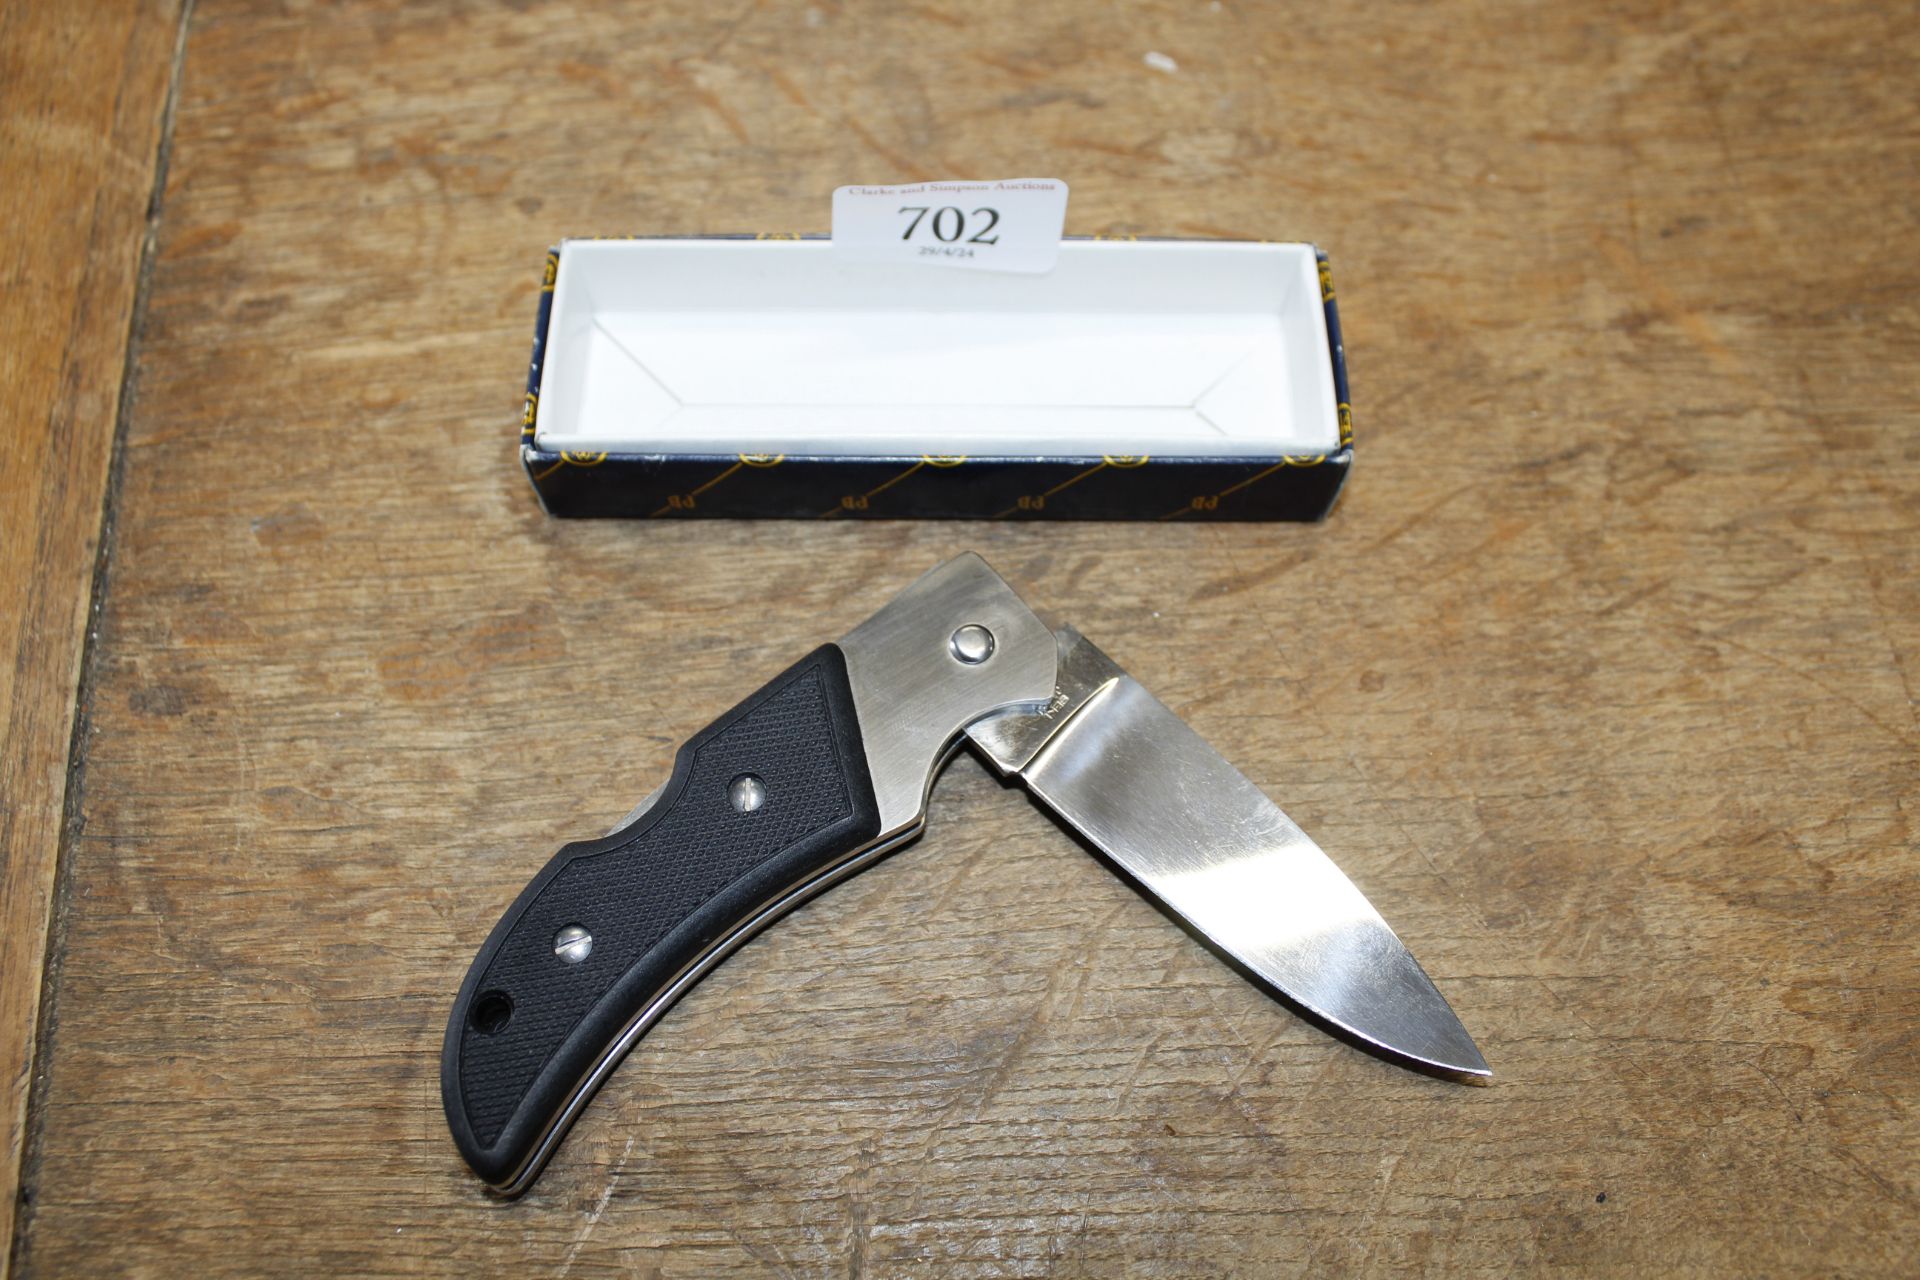 A boxed Beretta penknife